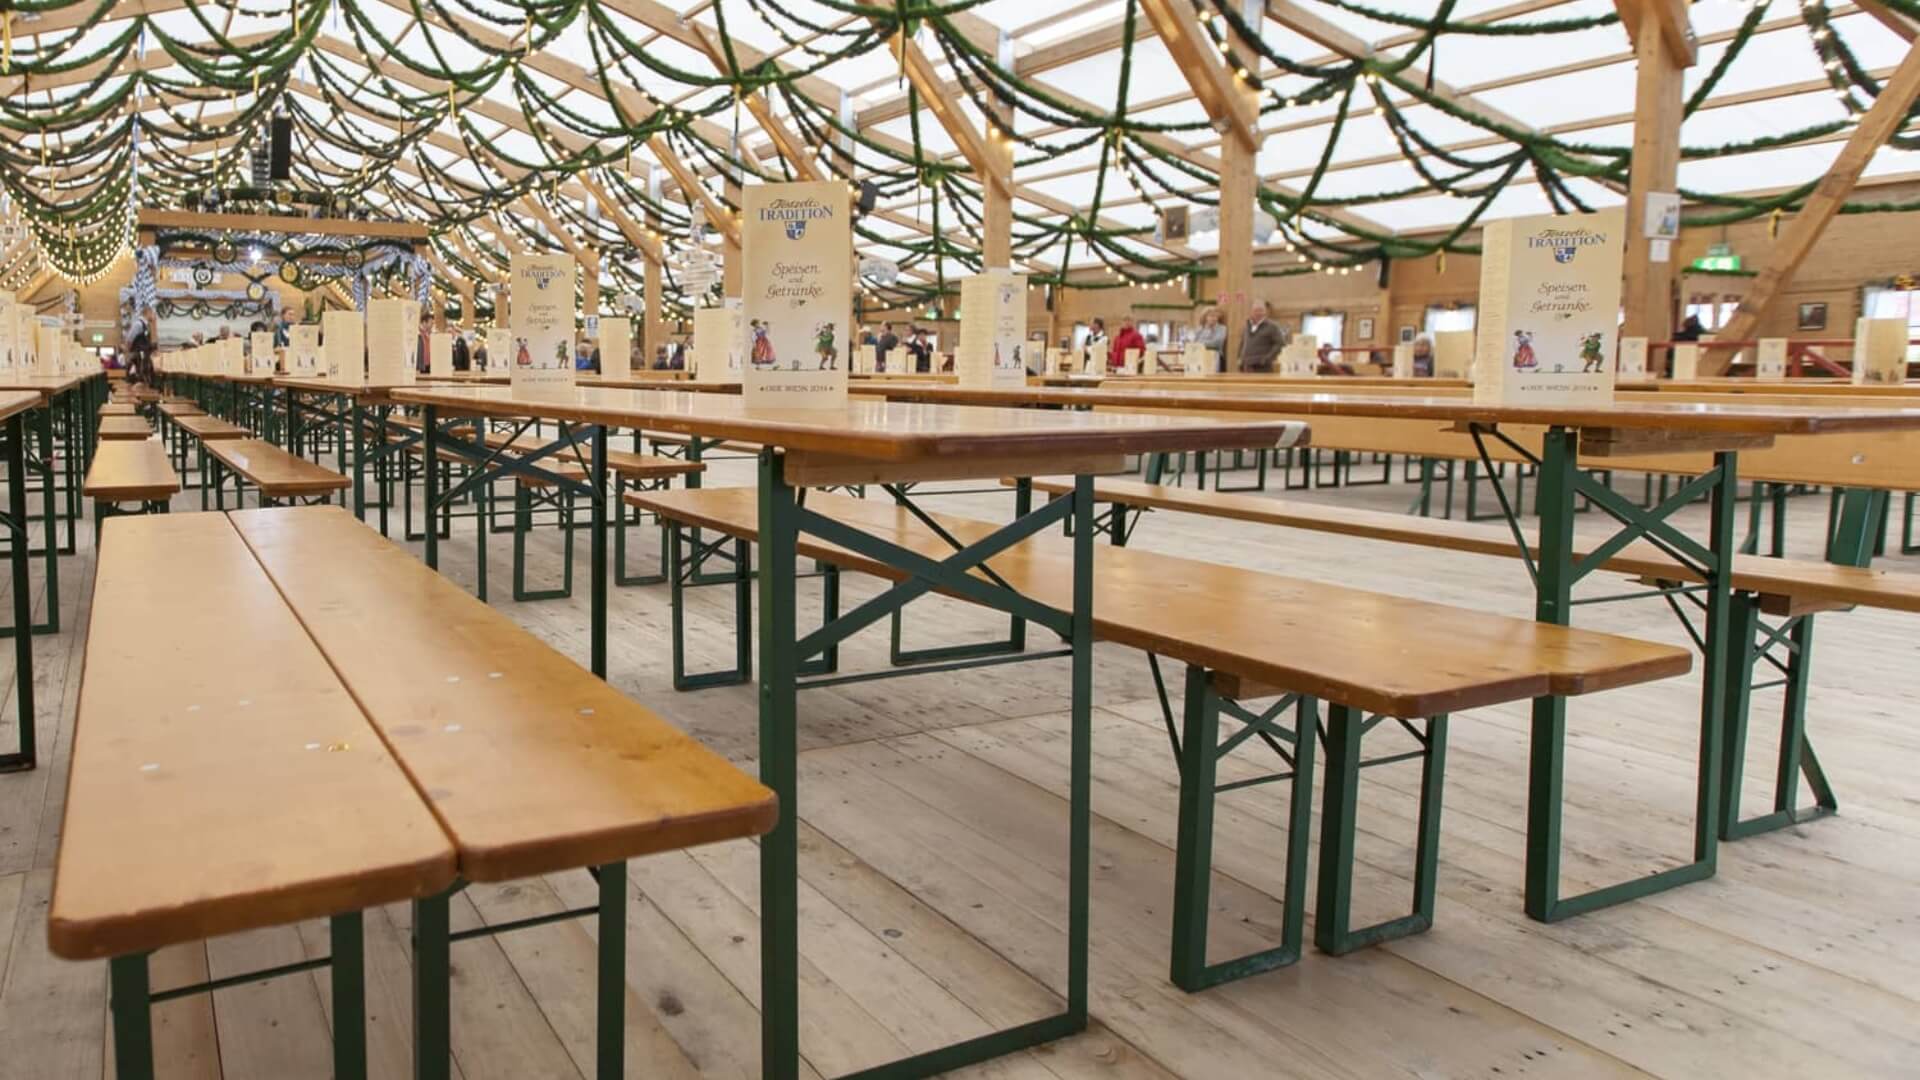 Viele Tische und Bänke der Bierzeltgarnitur unter einem Festzelt beim Oktoberfest.